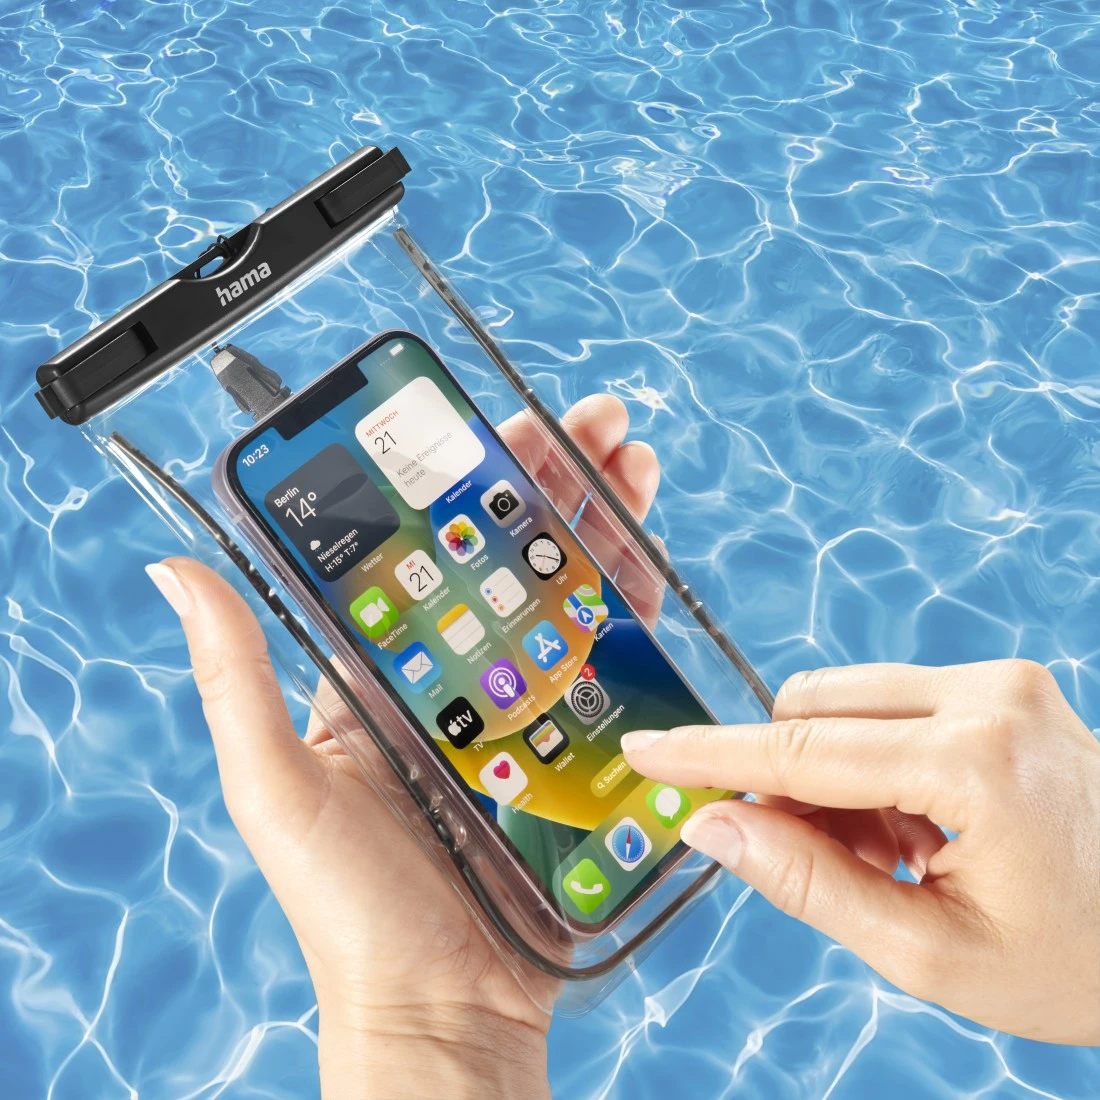 Pochette Etanche Tactile pour XIAOMI Redmi Note 5 Smartphone Eau Plage IPX8  Waterproof Coque (NOIR) - Shot Case